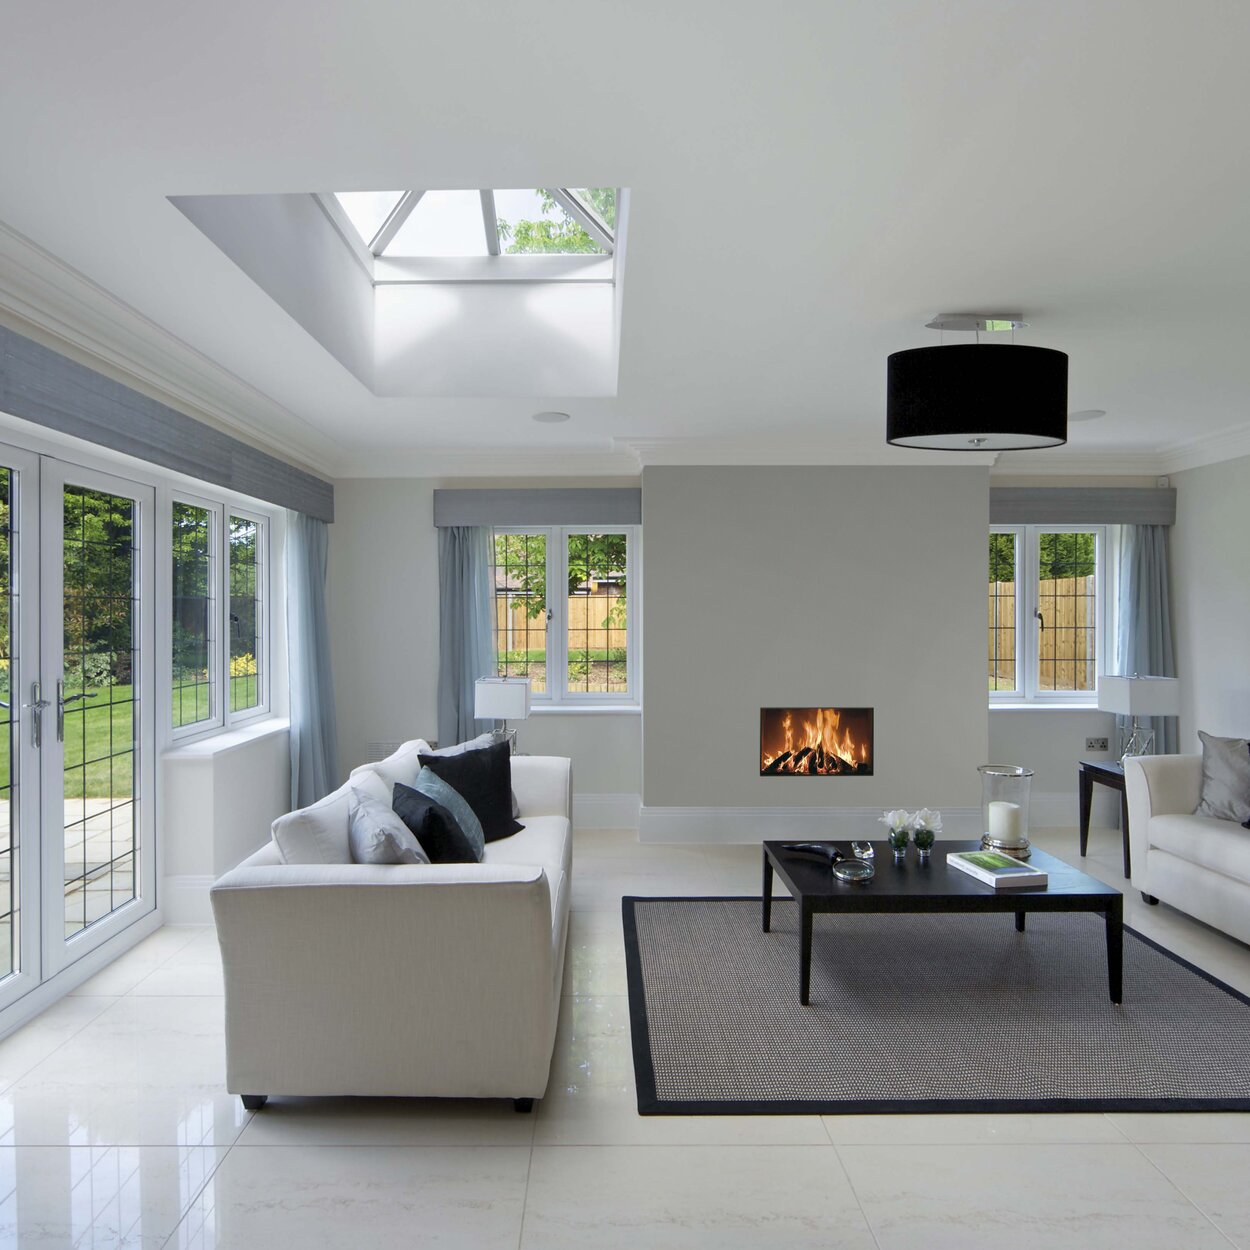 Holz-Kamin W85/40F von Kalfire in einem modernen, hellen Wohnraum mit Möblierung in Weiss und Schwarz